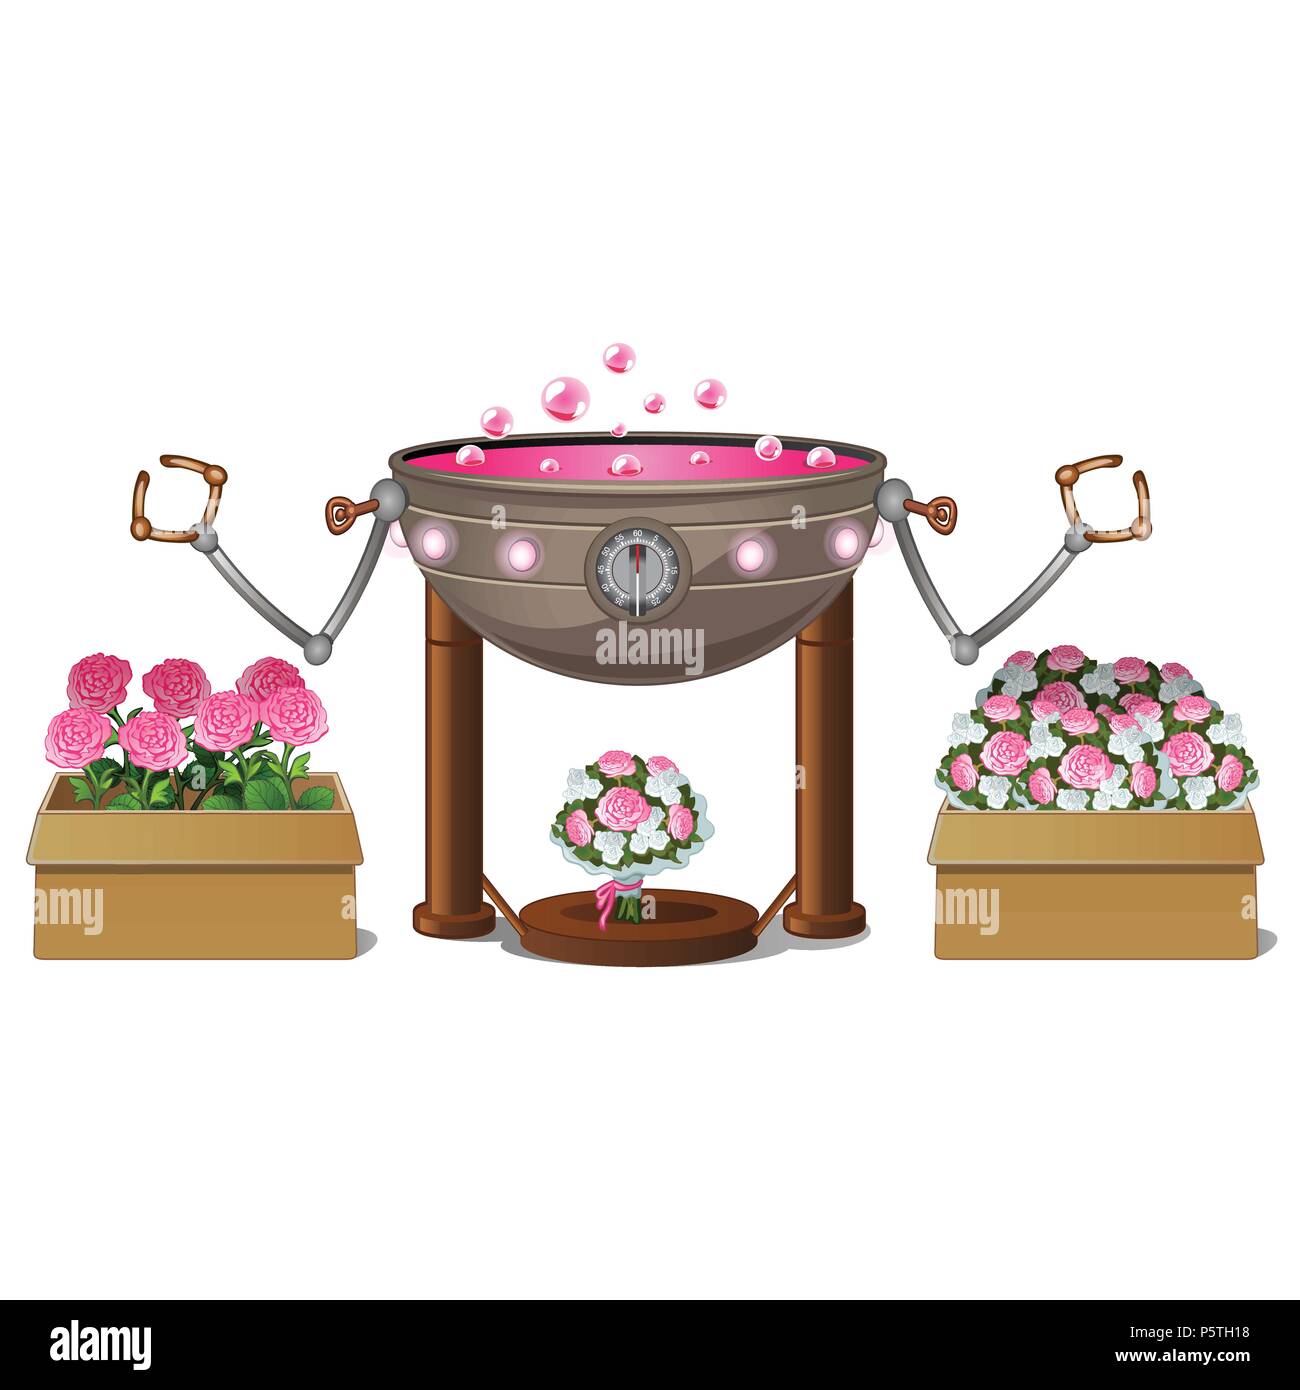 Fancy automatisierte Anlagen für duftende Blumen auf weißem Hintergrund. Vektor cartoon Close-up Abbildung. Stock Vektor